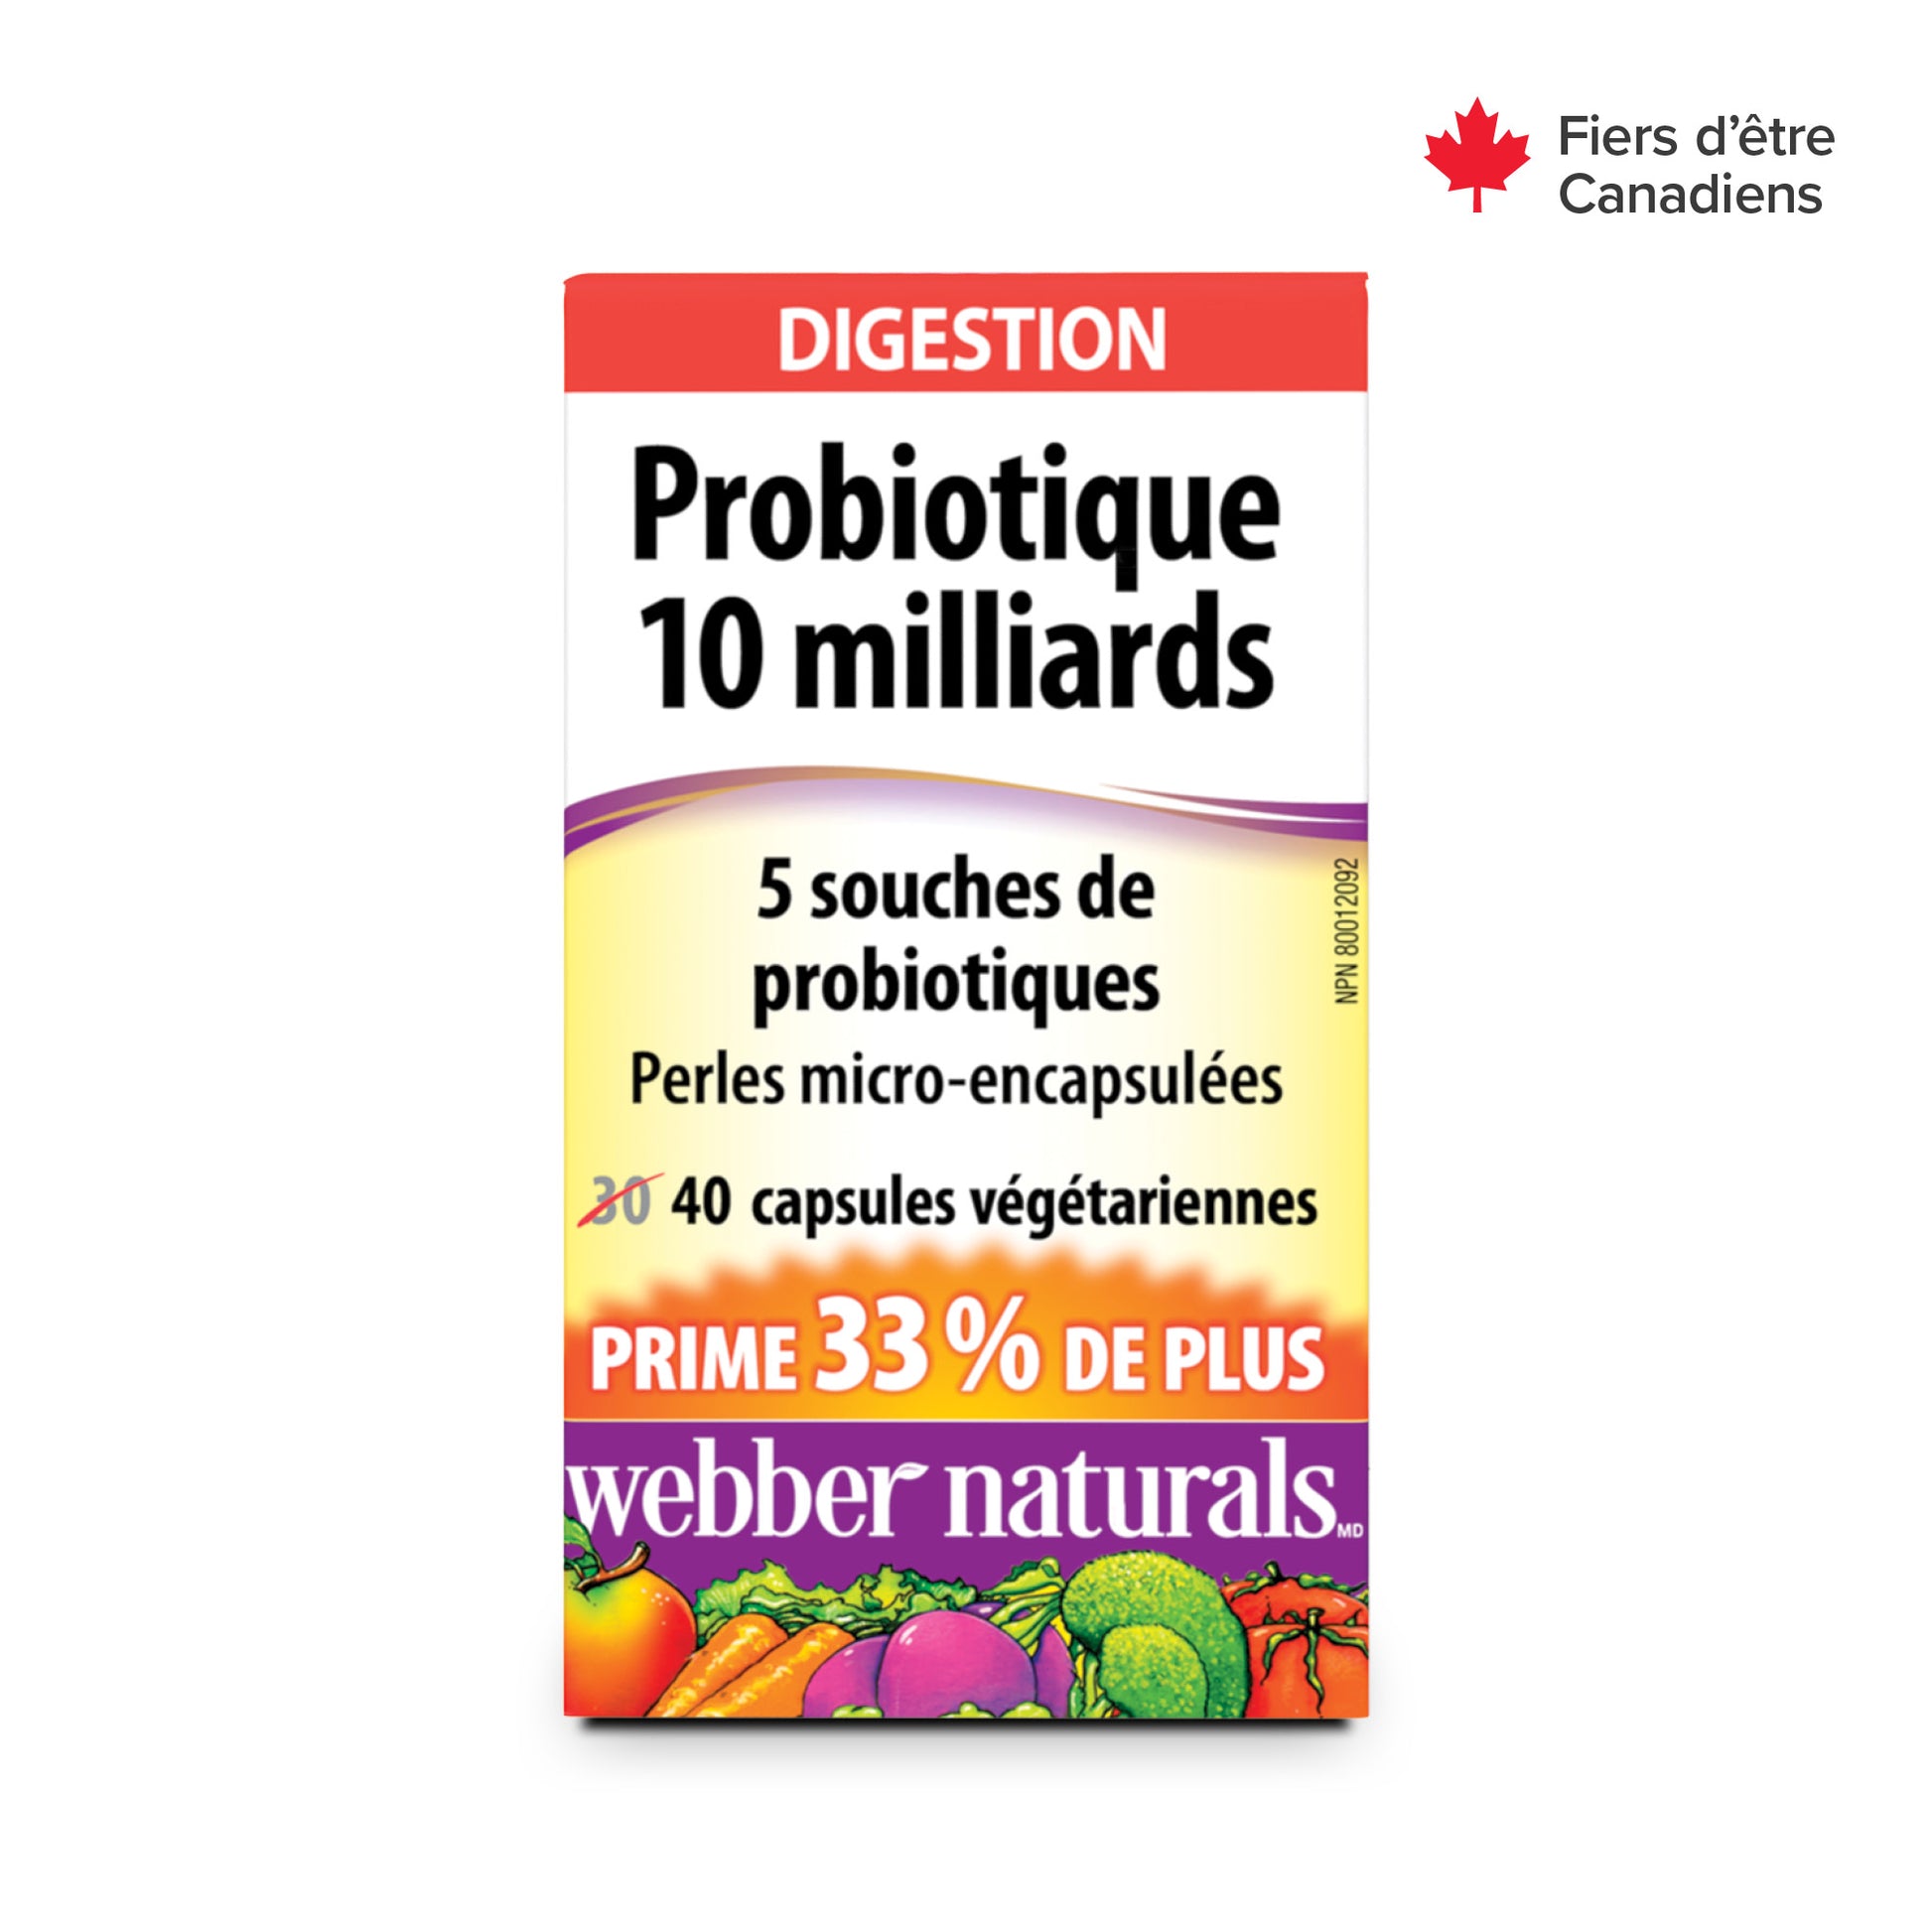 Probiotique 10 milliards for Webber Naturals|v|hi-res|WN3844